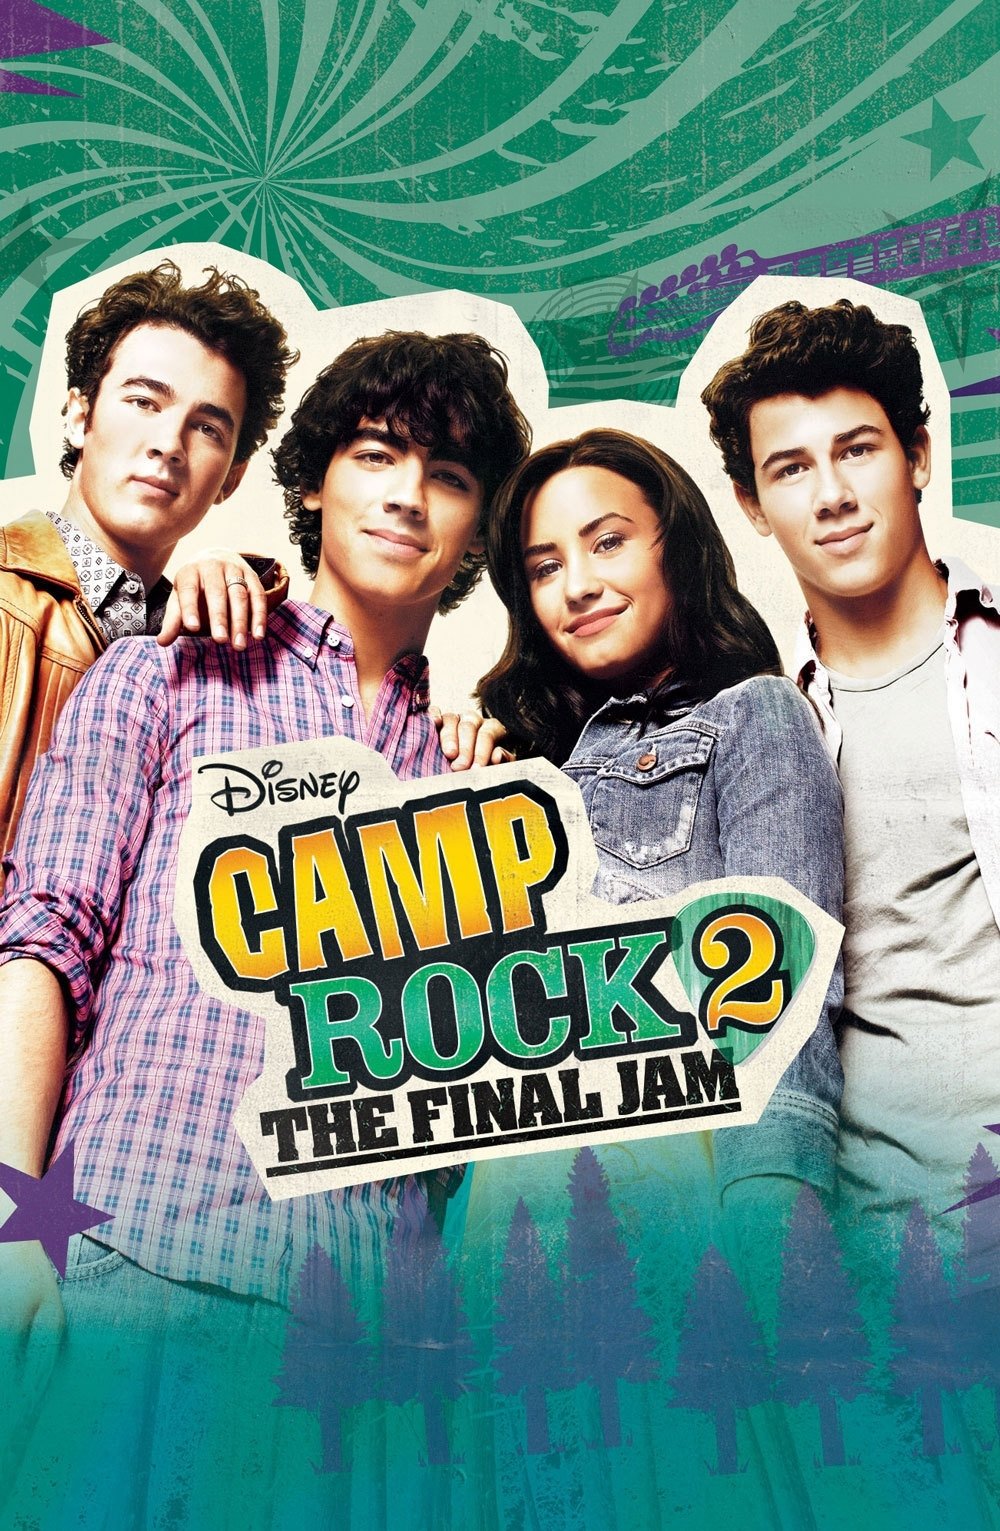 Camp rock 2 - Le face à face